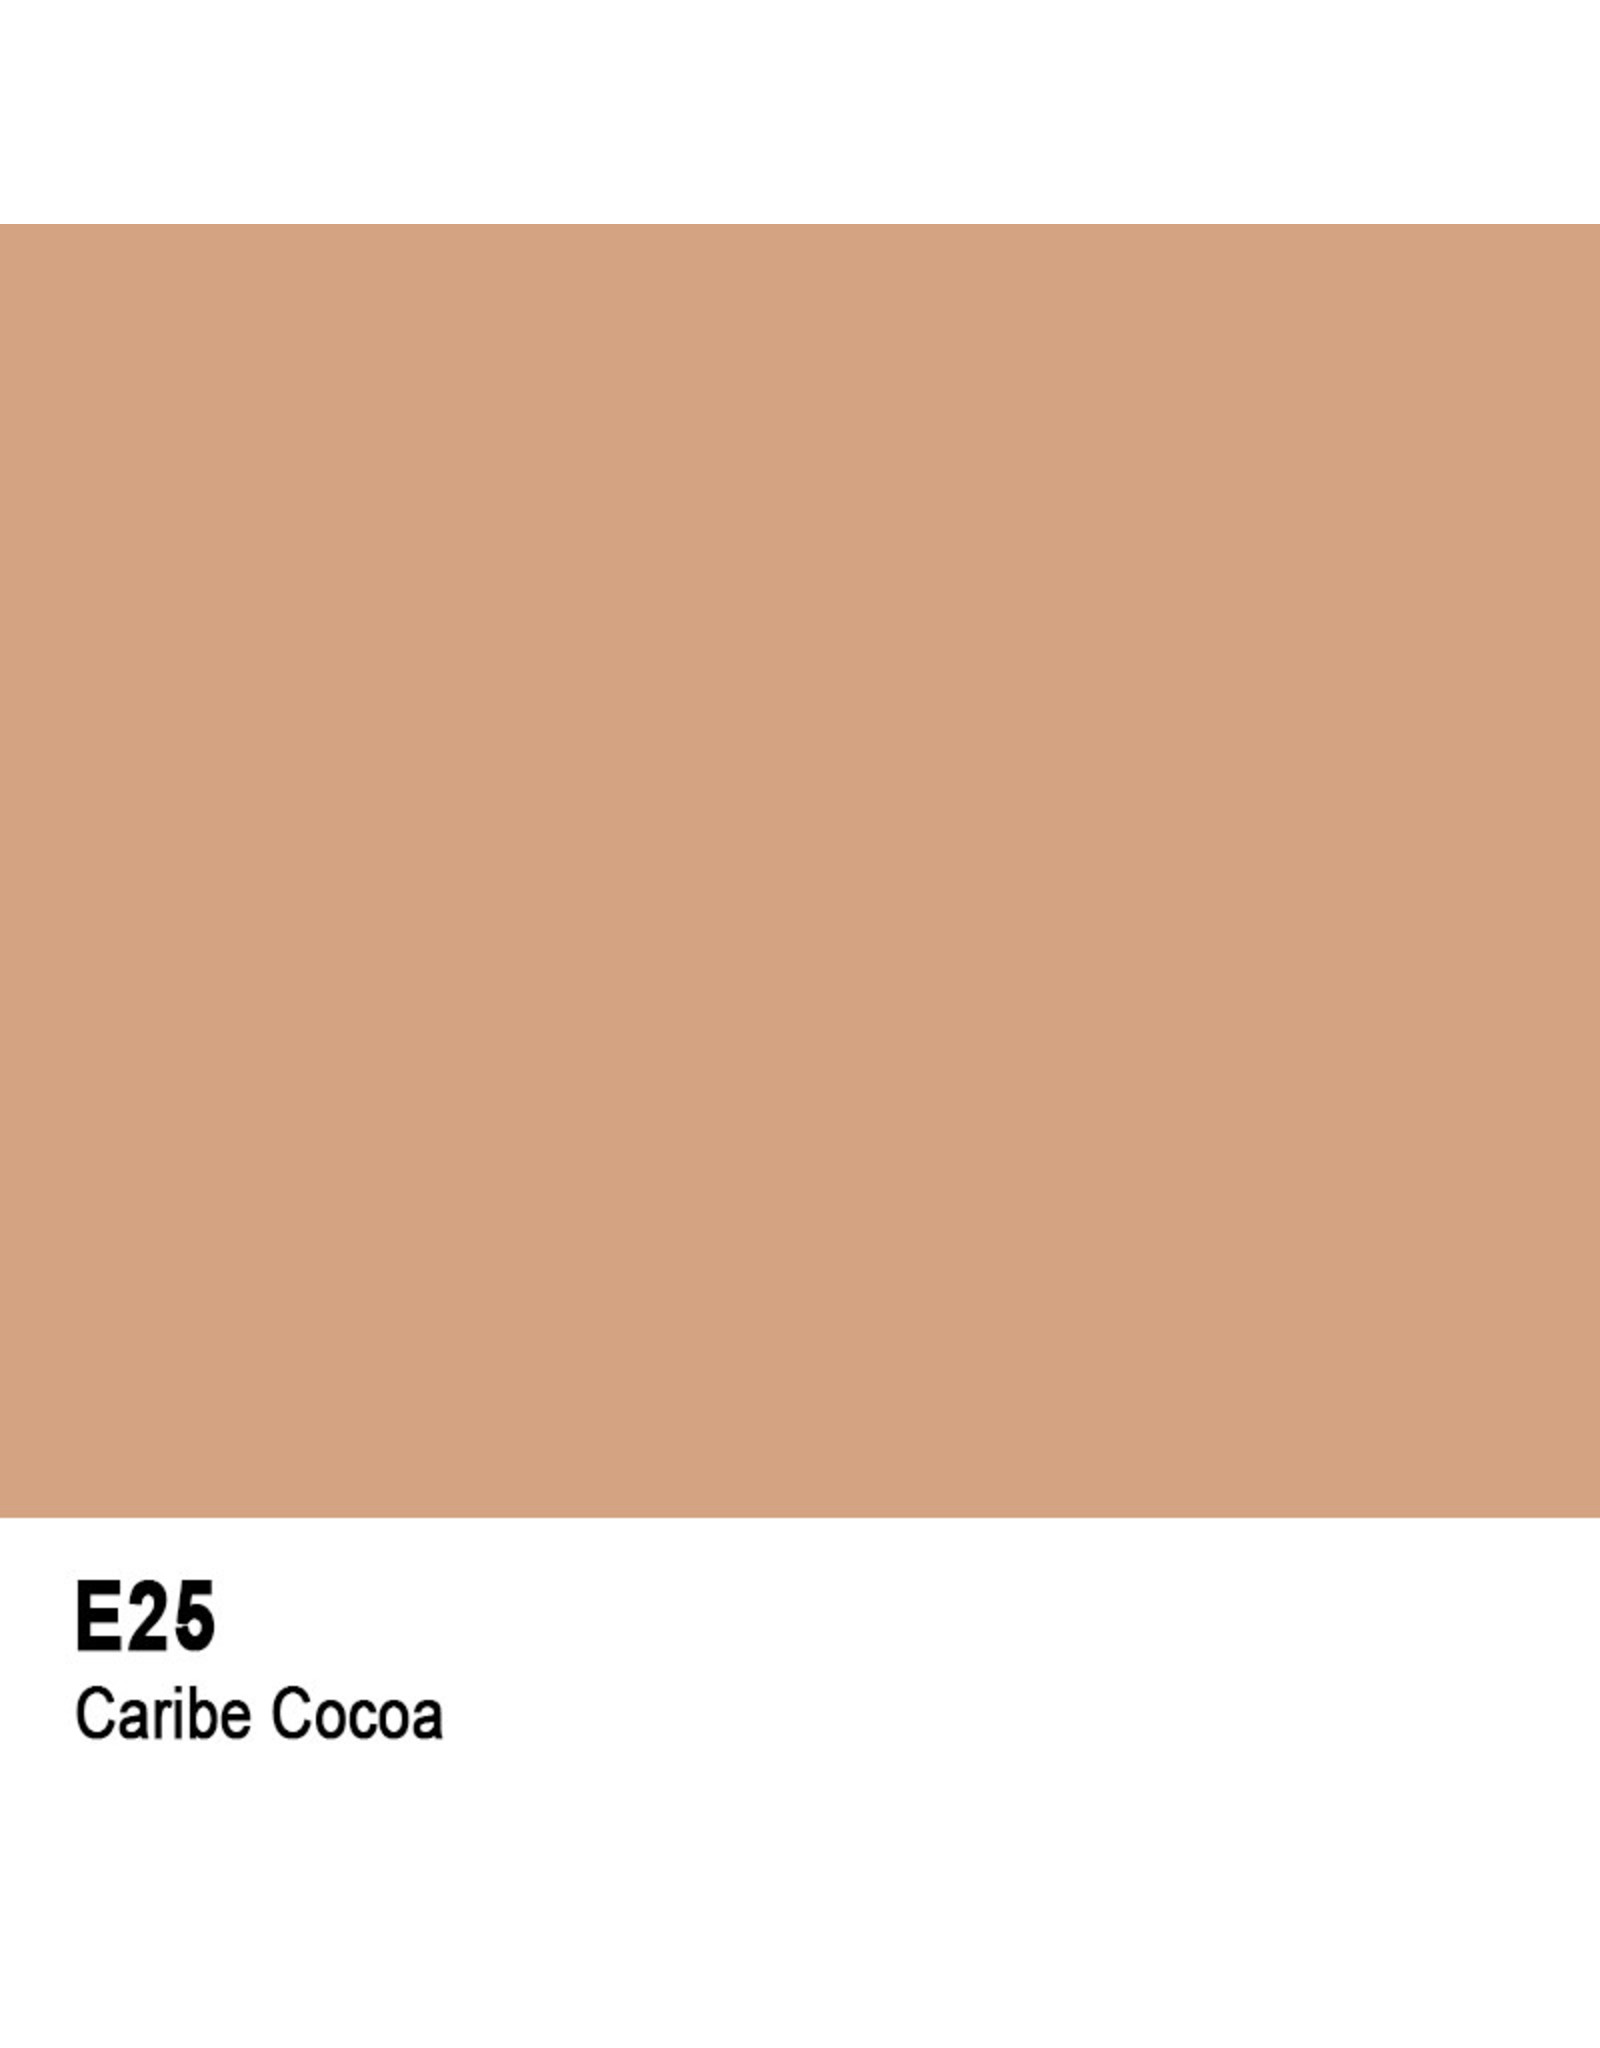 COPIC COPIC E25 CARIBE COCOA SKETCH MARKER